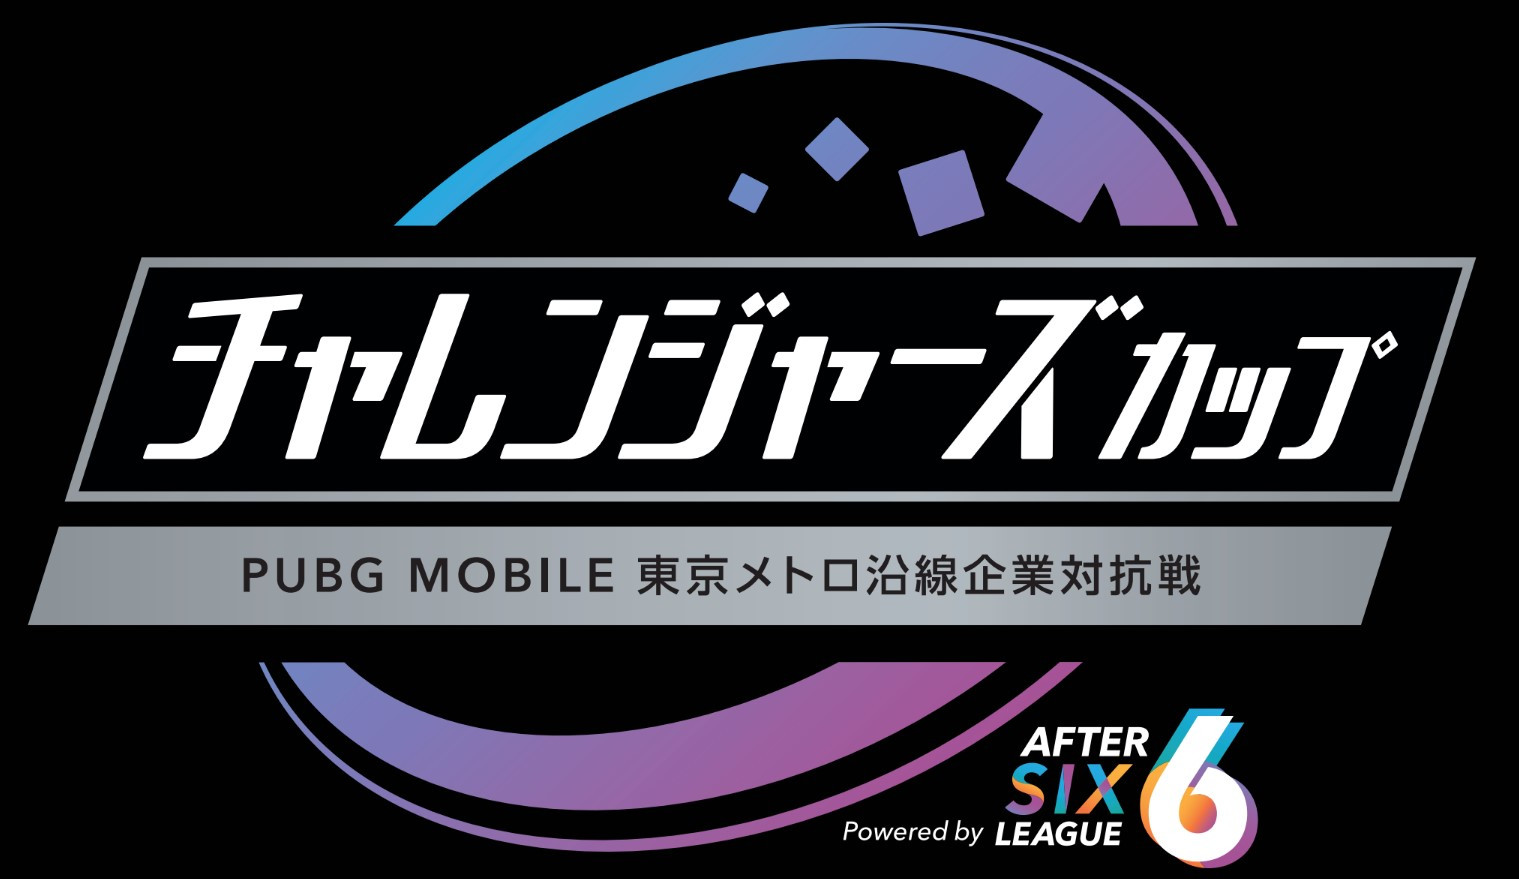 大会情報 社会人チャレンジャーズカップ Pubg Mobile東京メトロ沿線企業対抗戦 Powered By After 6 League 21年8月28日 Esports World Eスポーツワールド